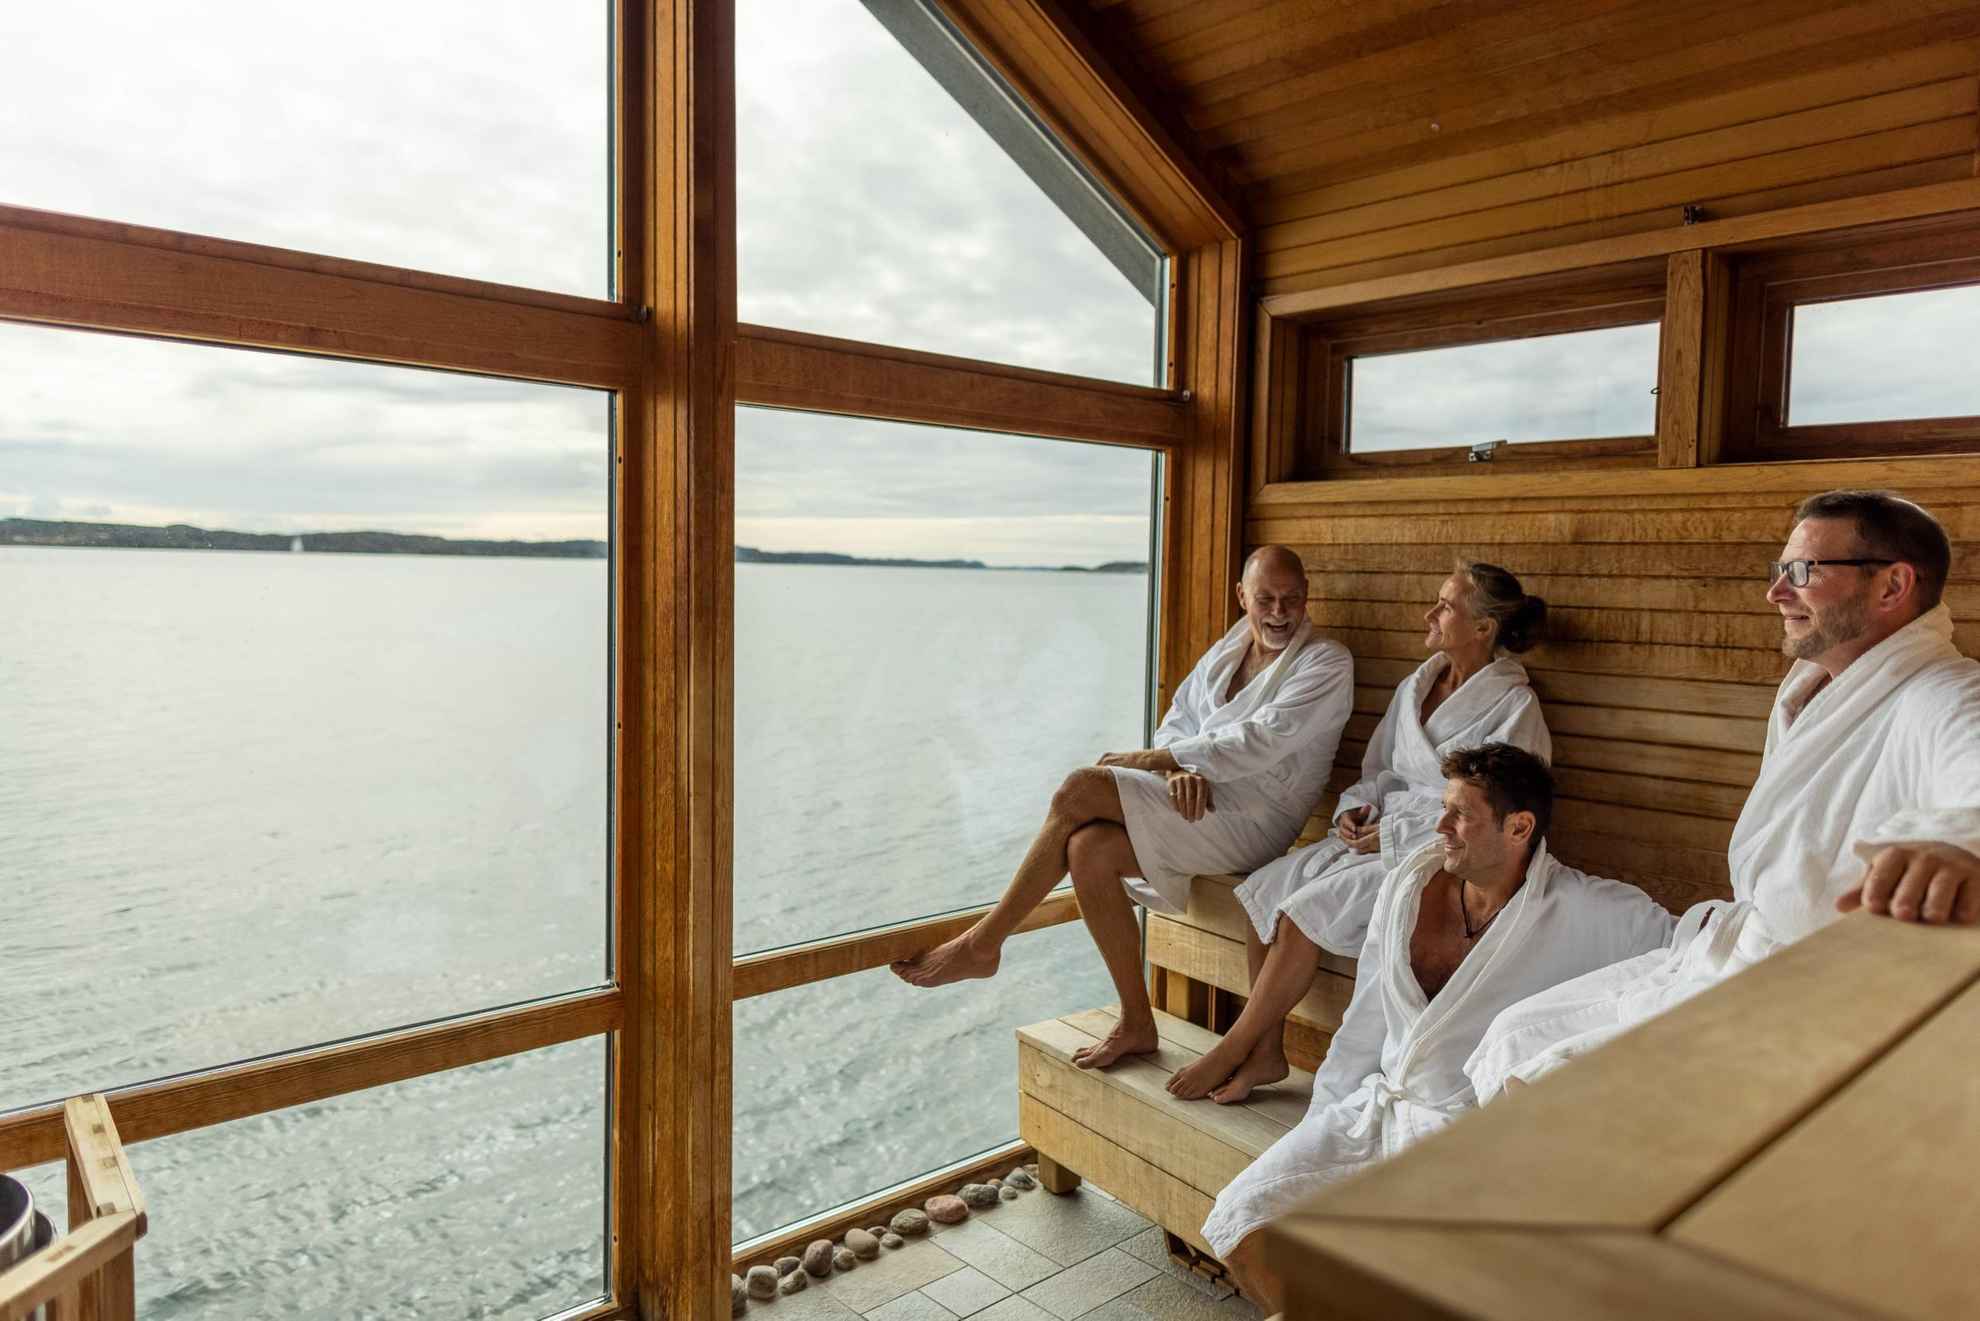 Vier personen genieten van de sauna en het uitzicht op zee.